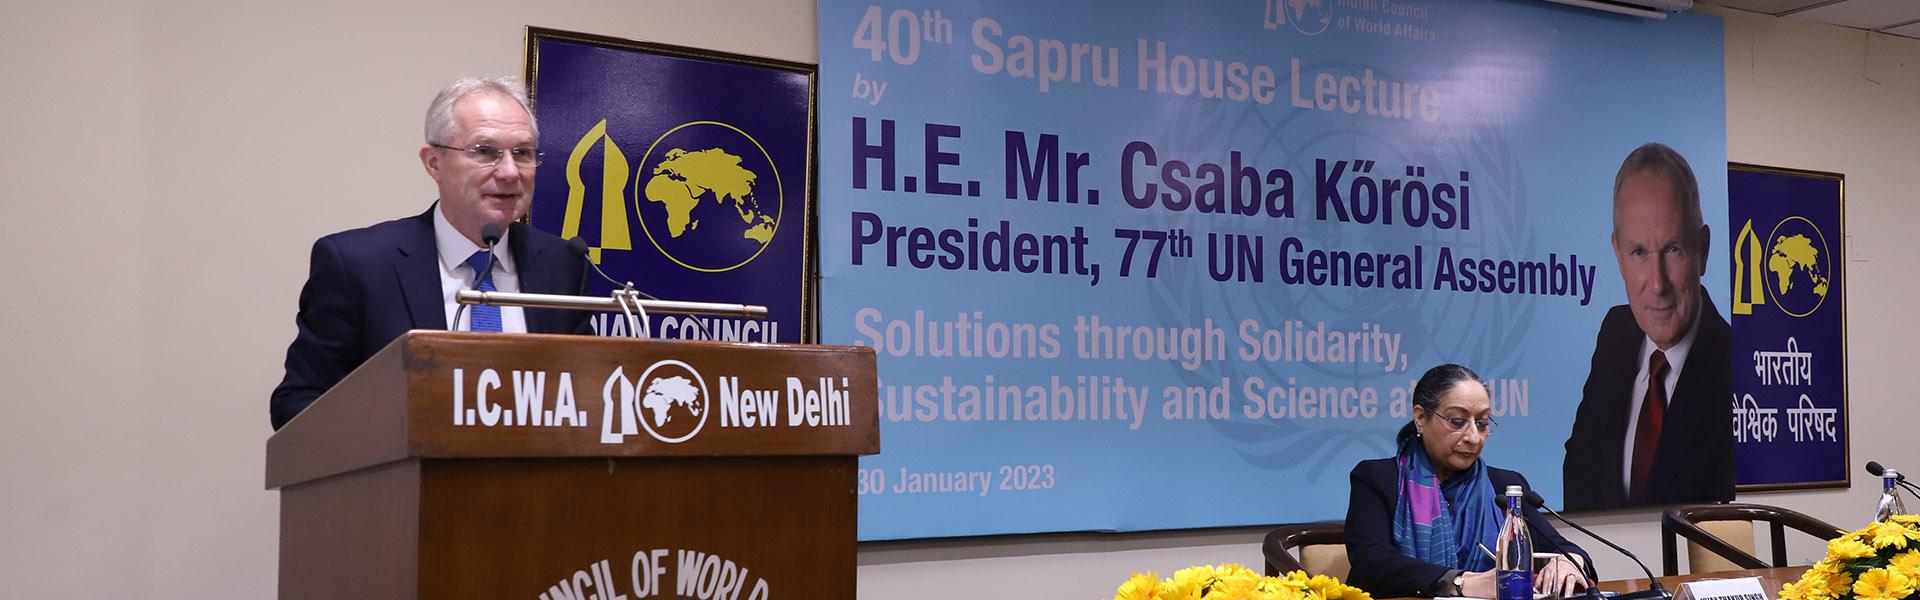 महामहिम श्री साबा कोरोसी, अध्यक्ष, 77 वीं संयुक्त राष्ट्र महासभा (यूएनजीए) ने 30 जनवरी 2023 को आईसीडब्ल्यूए में 